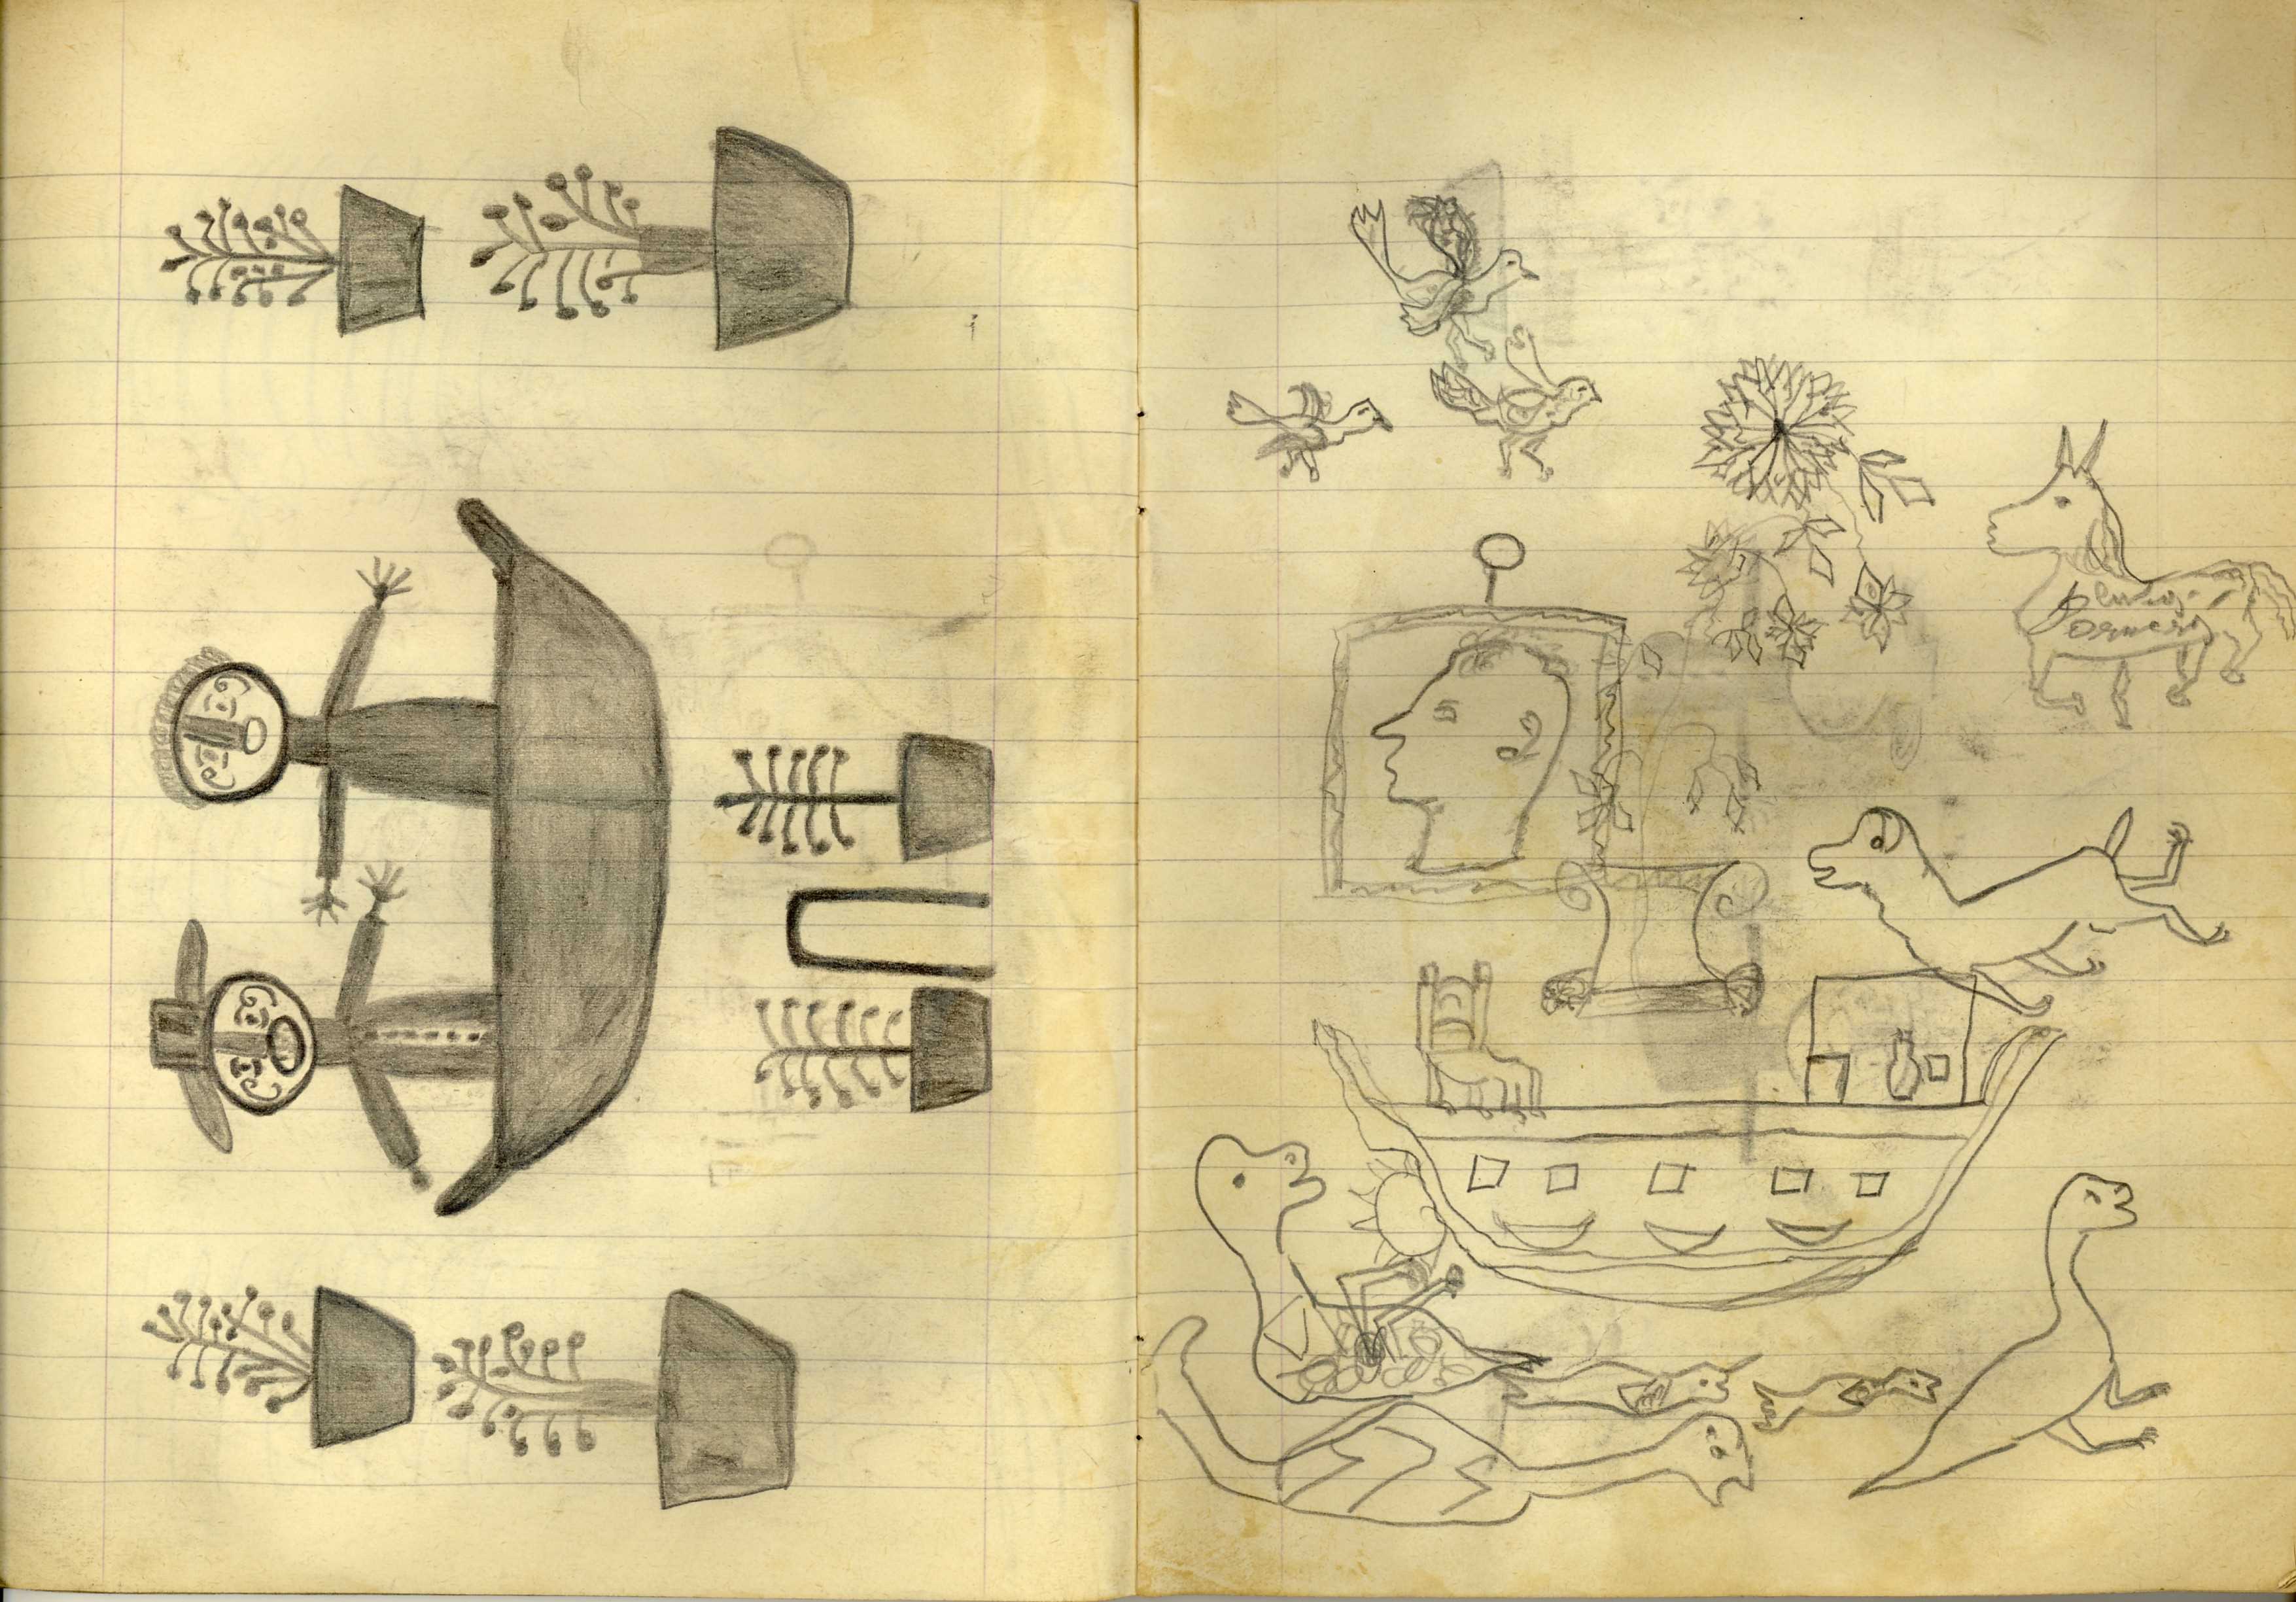 Senza Titolo, Quaderno di disegni (1) (taccuino di disegni) di Sopetti, Luigi - ambito manicomiale (inizio XX secolo)